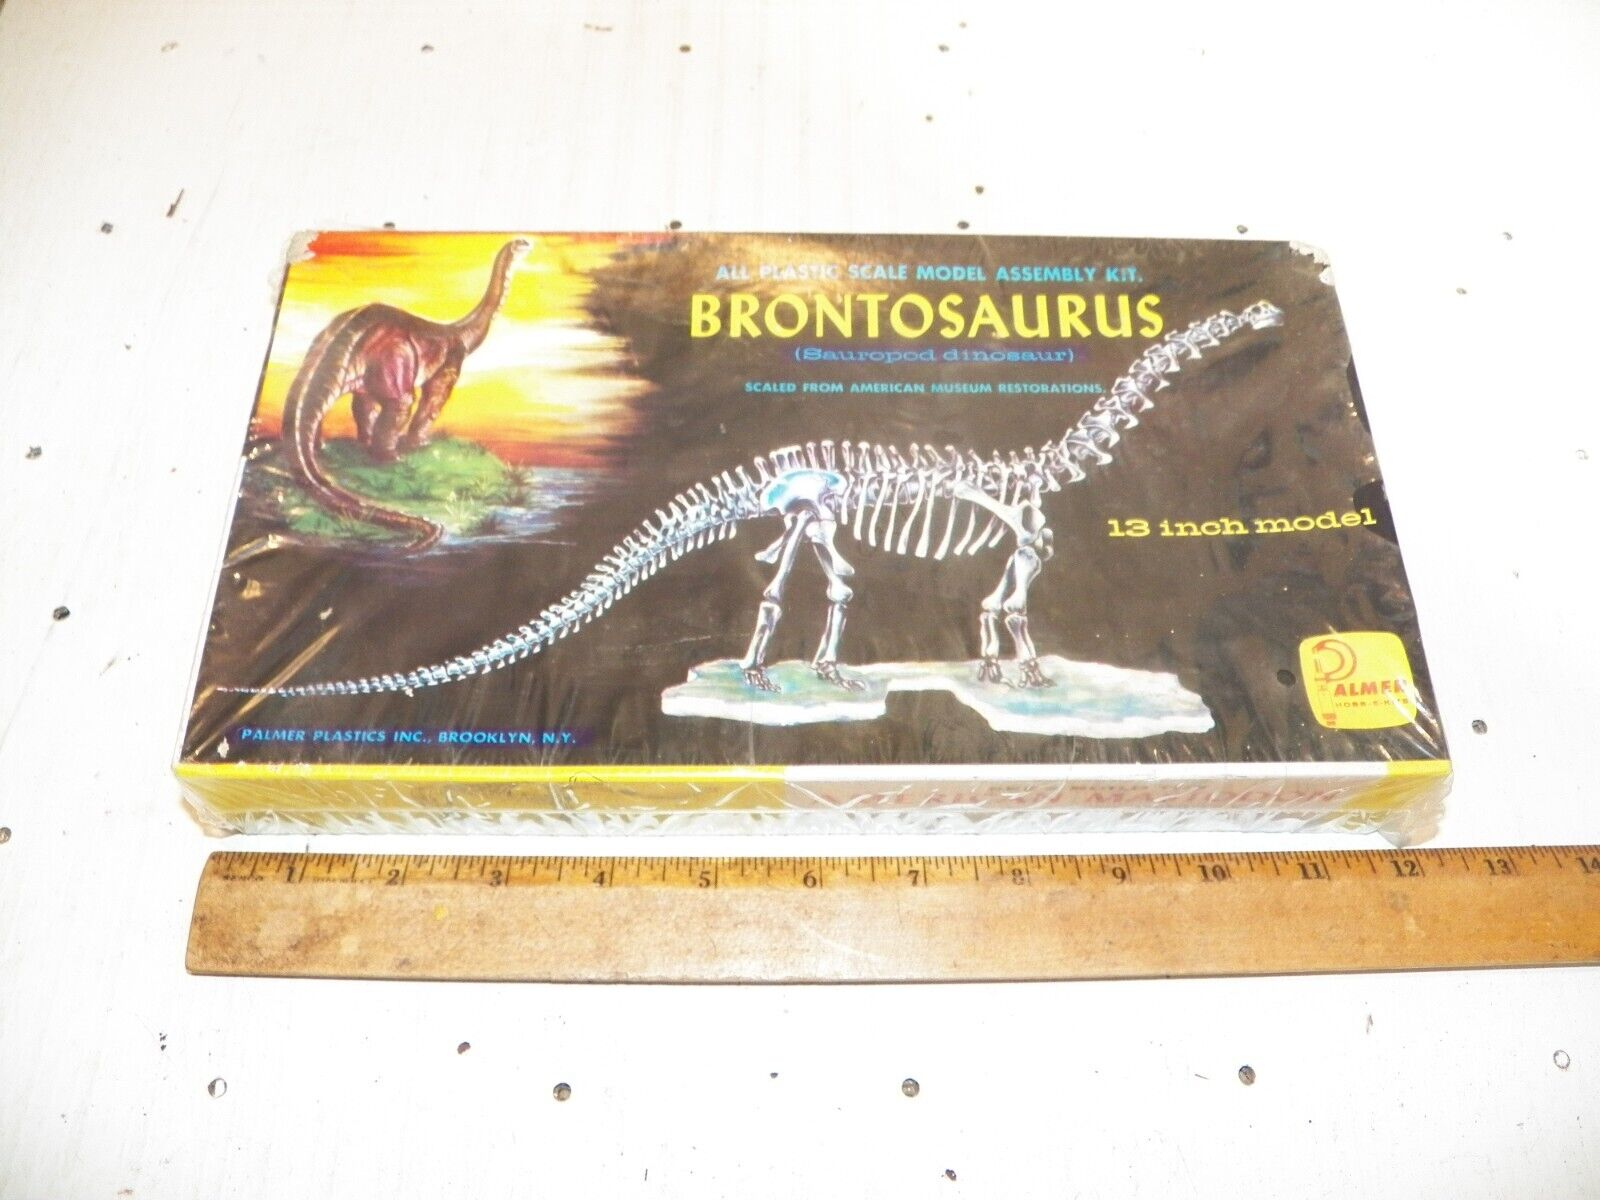 Vintage PALMER PLASTICS Brontosaurus Model Kit - Sealed